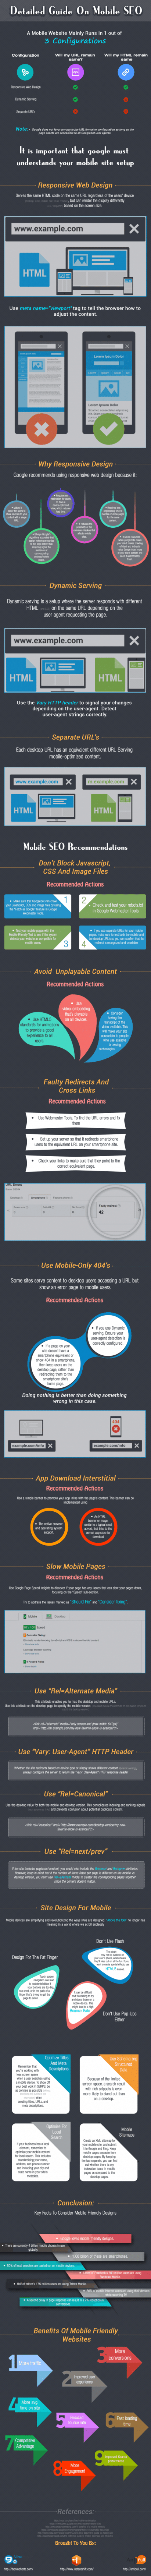 mobile seo guide